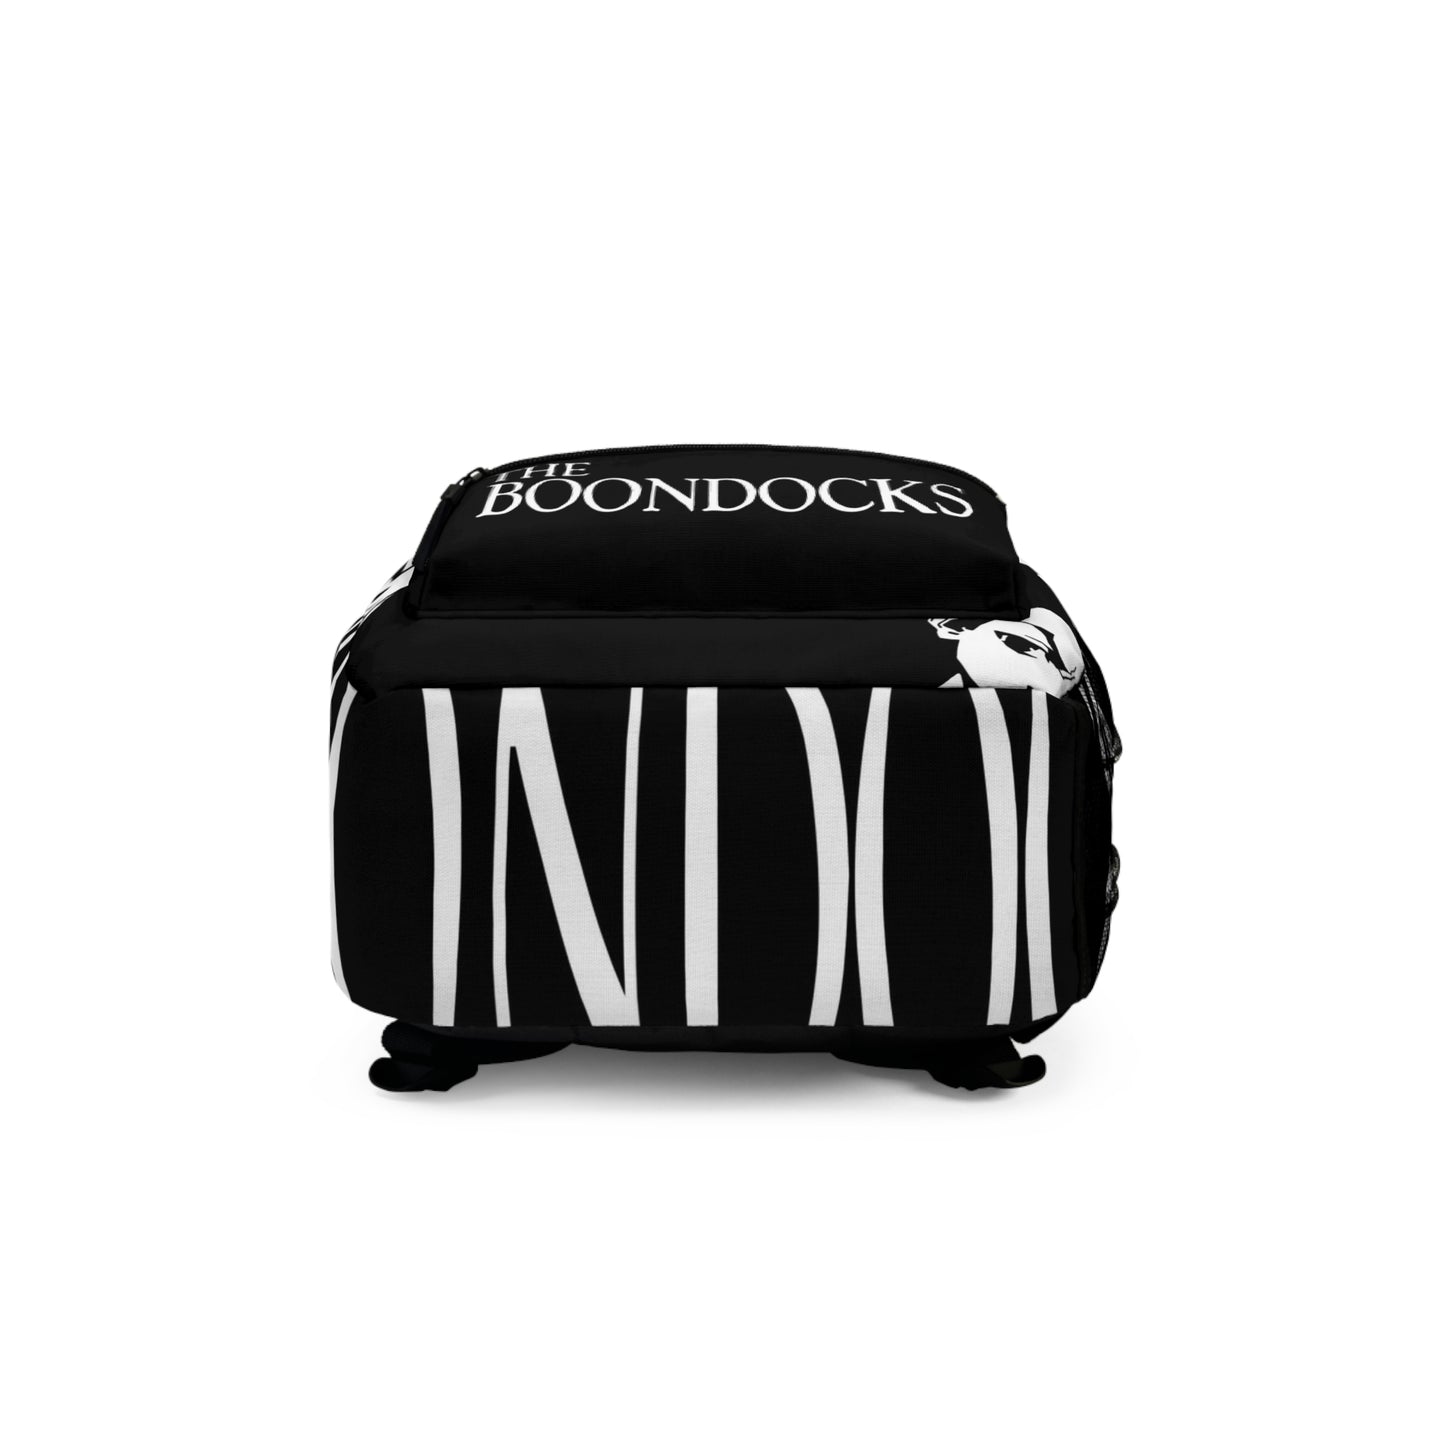 The Boondocks Mafia Backpack